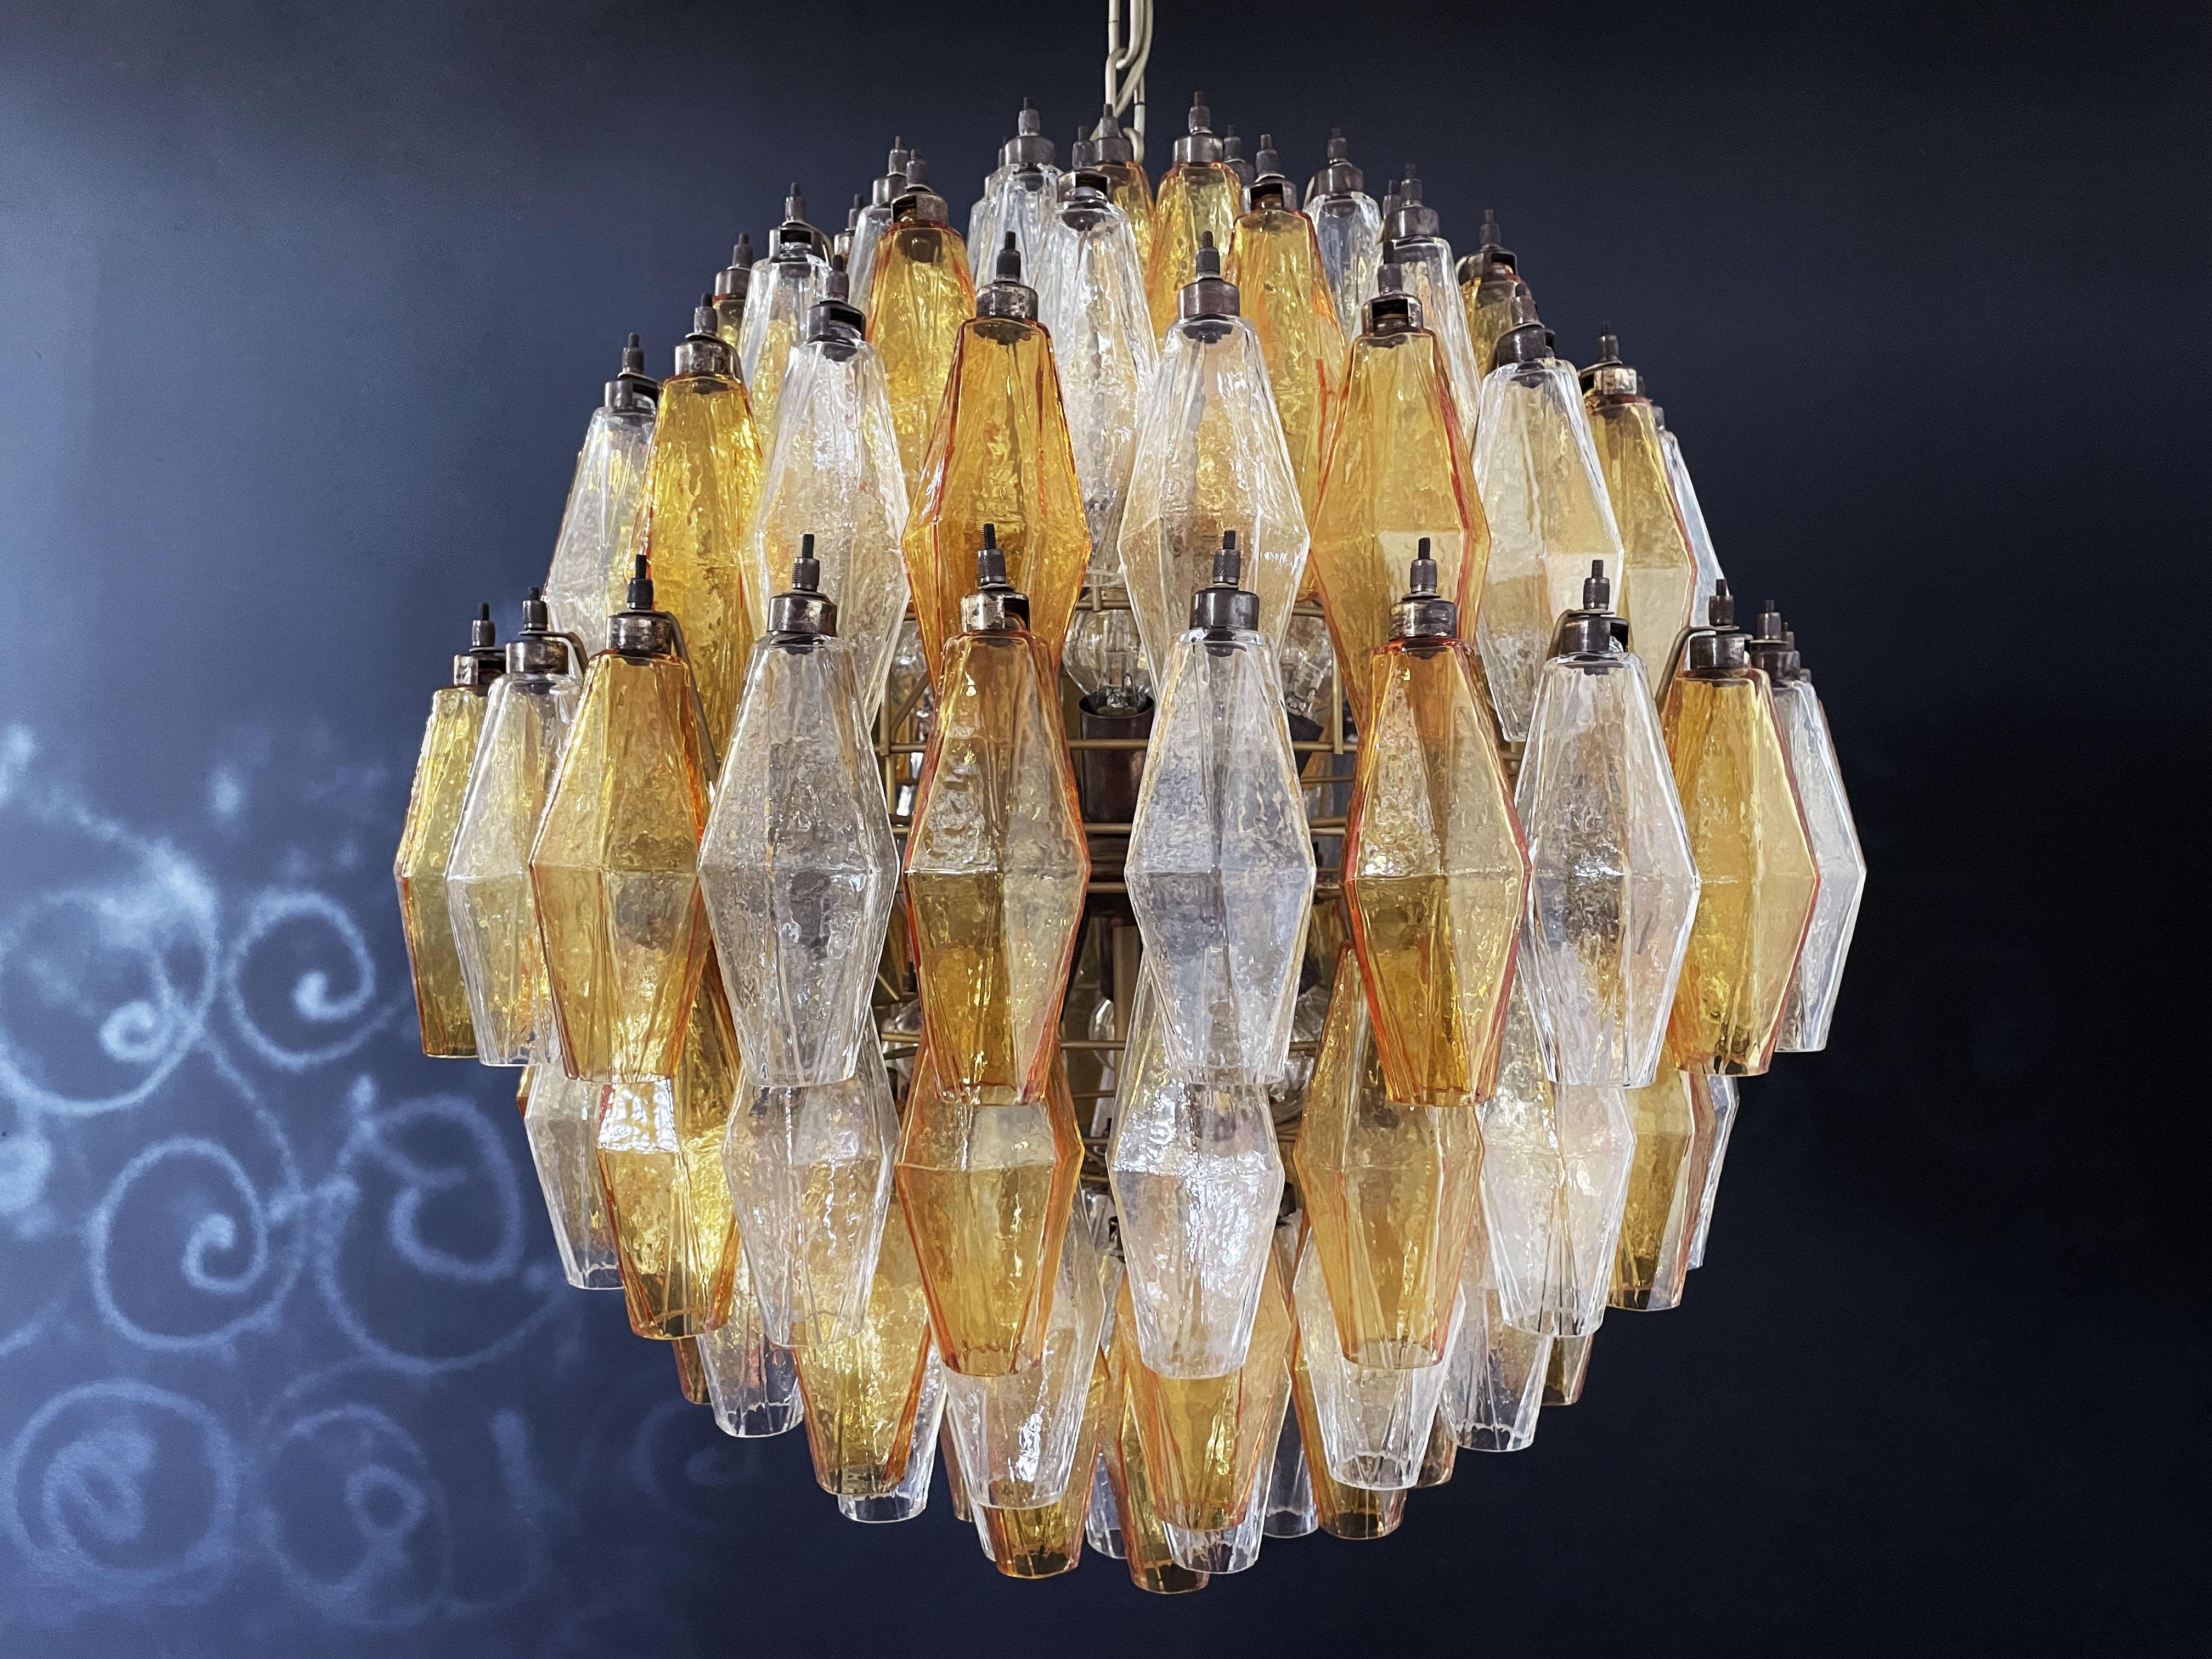 Amazing Spherical Murano Poliedri Candelier, 140 Amber and Clear Poliedri In Good Condition For Sale In Gaiarine Frazione Francenigo (TV), IT